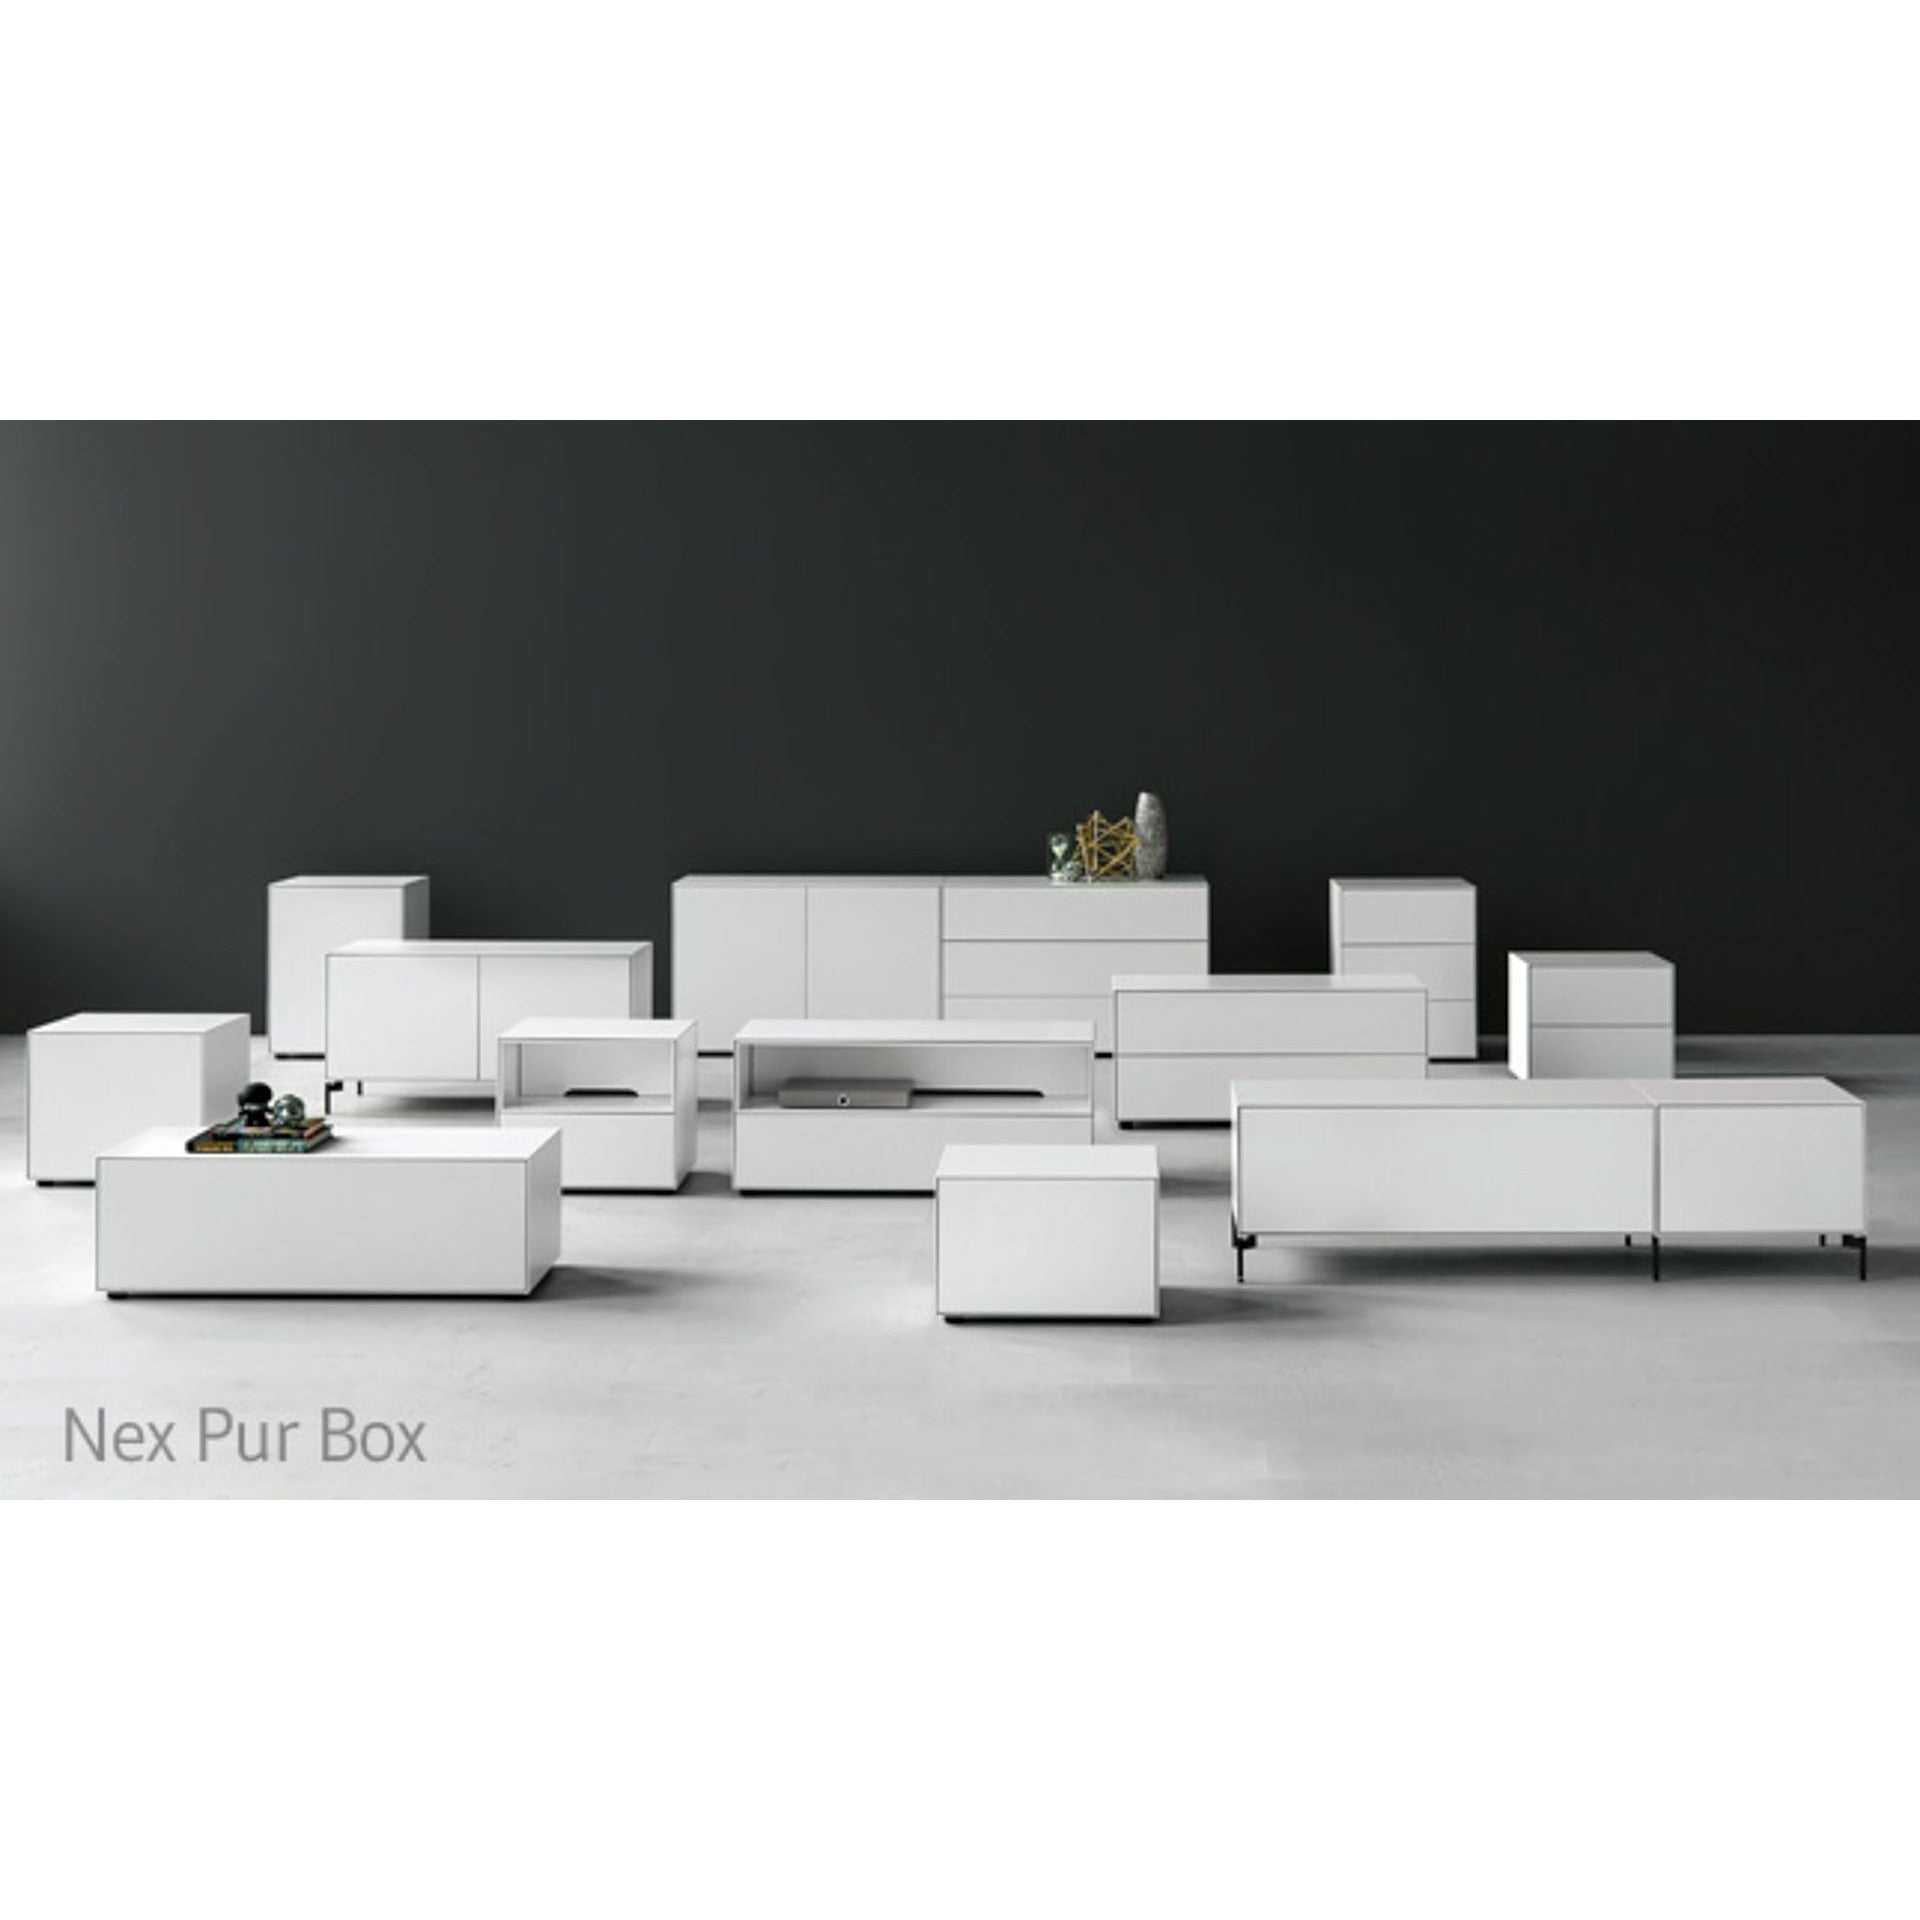 Piure Nex Pur Box HX W 50x120 cm, 2 zásuvky